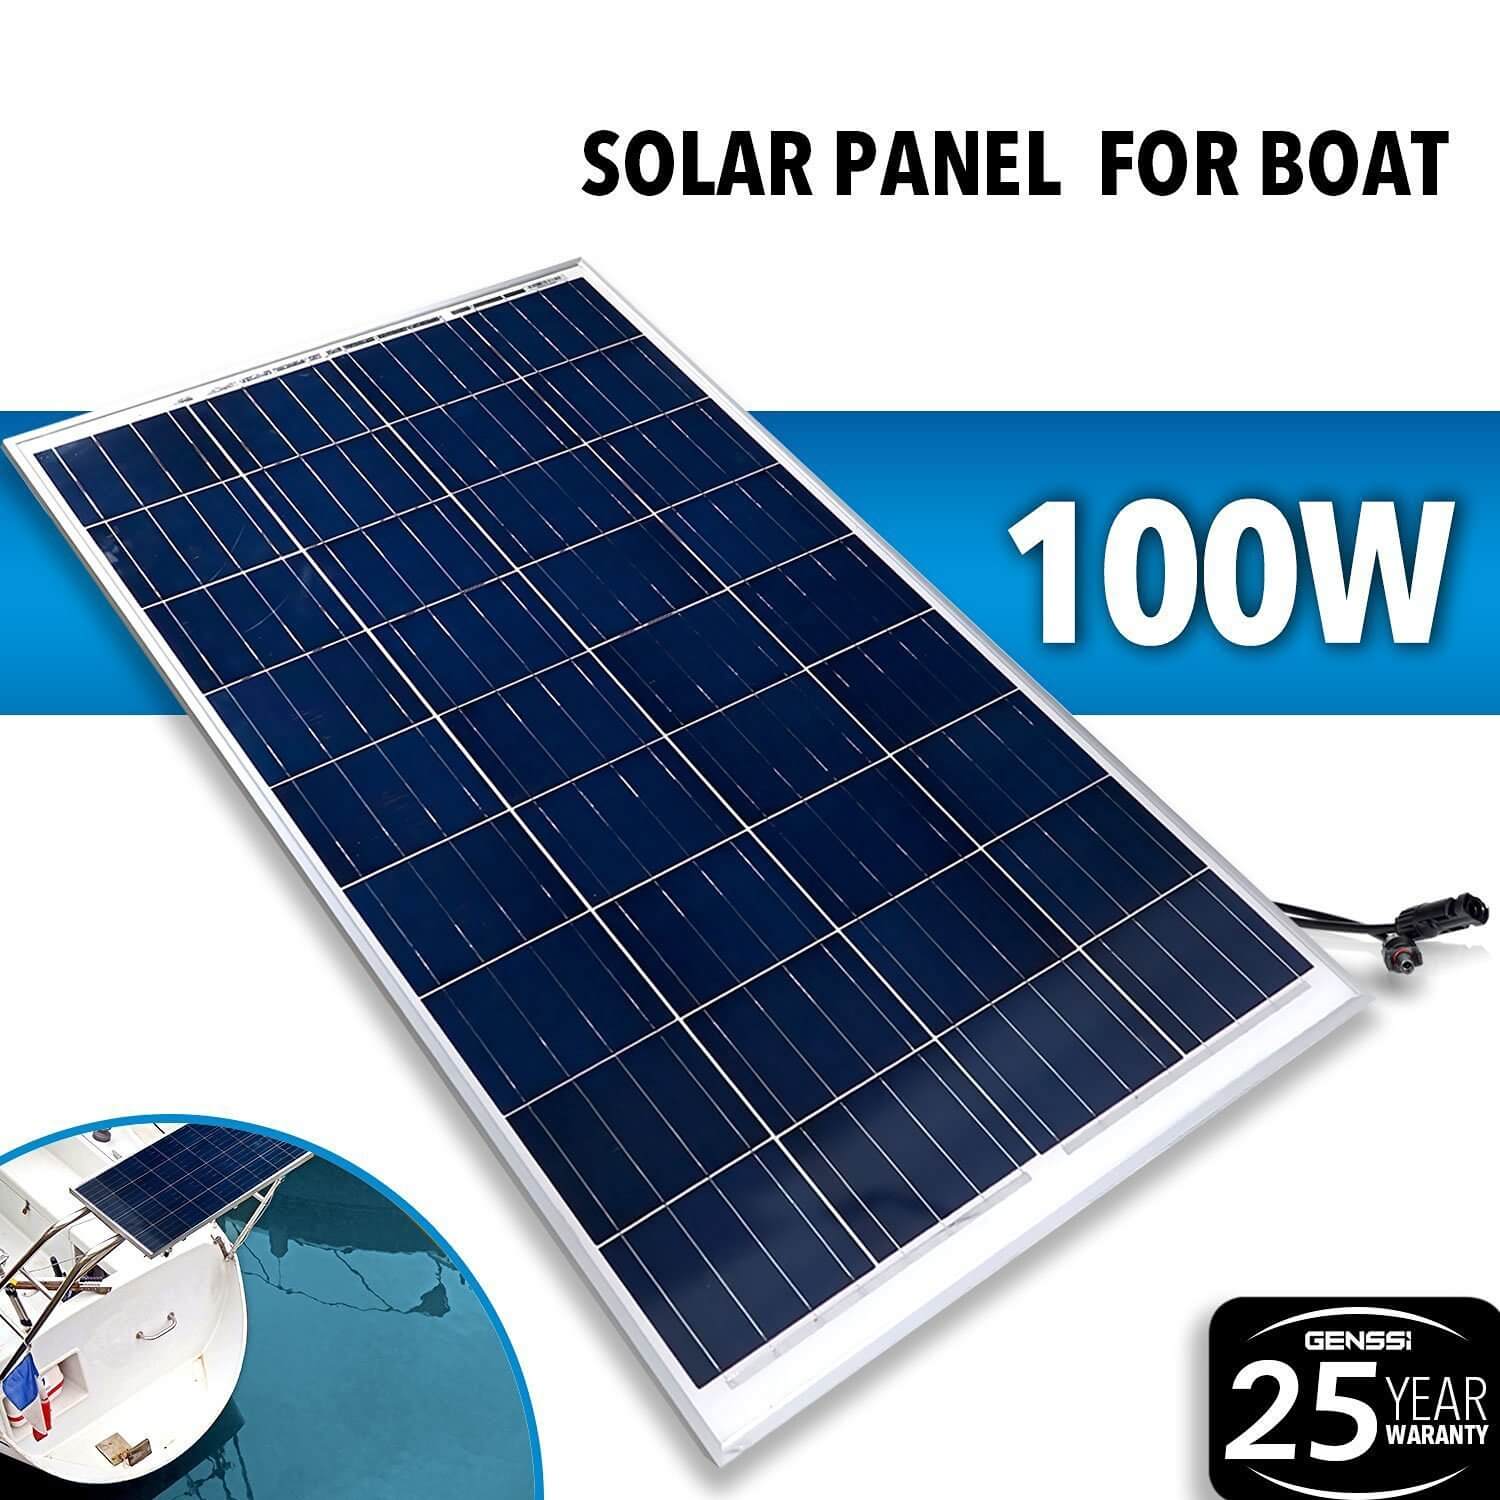 The Solar Panel.